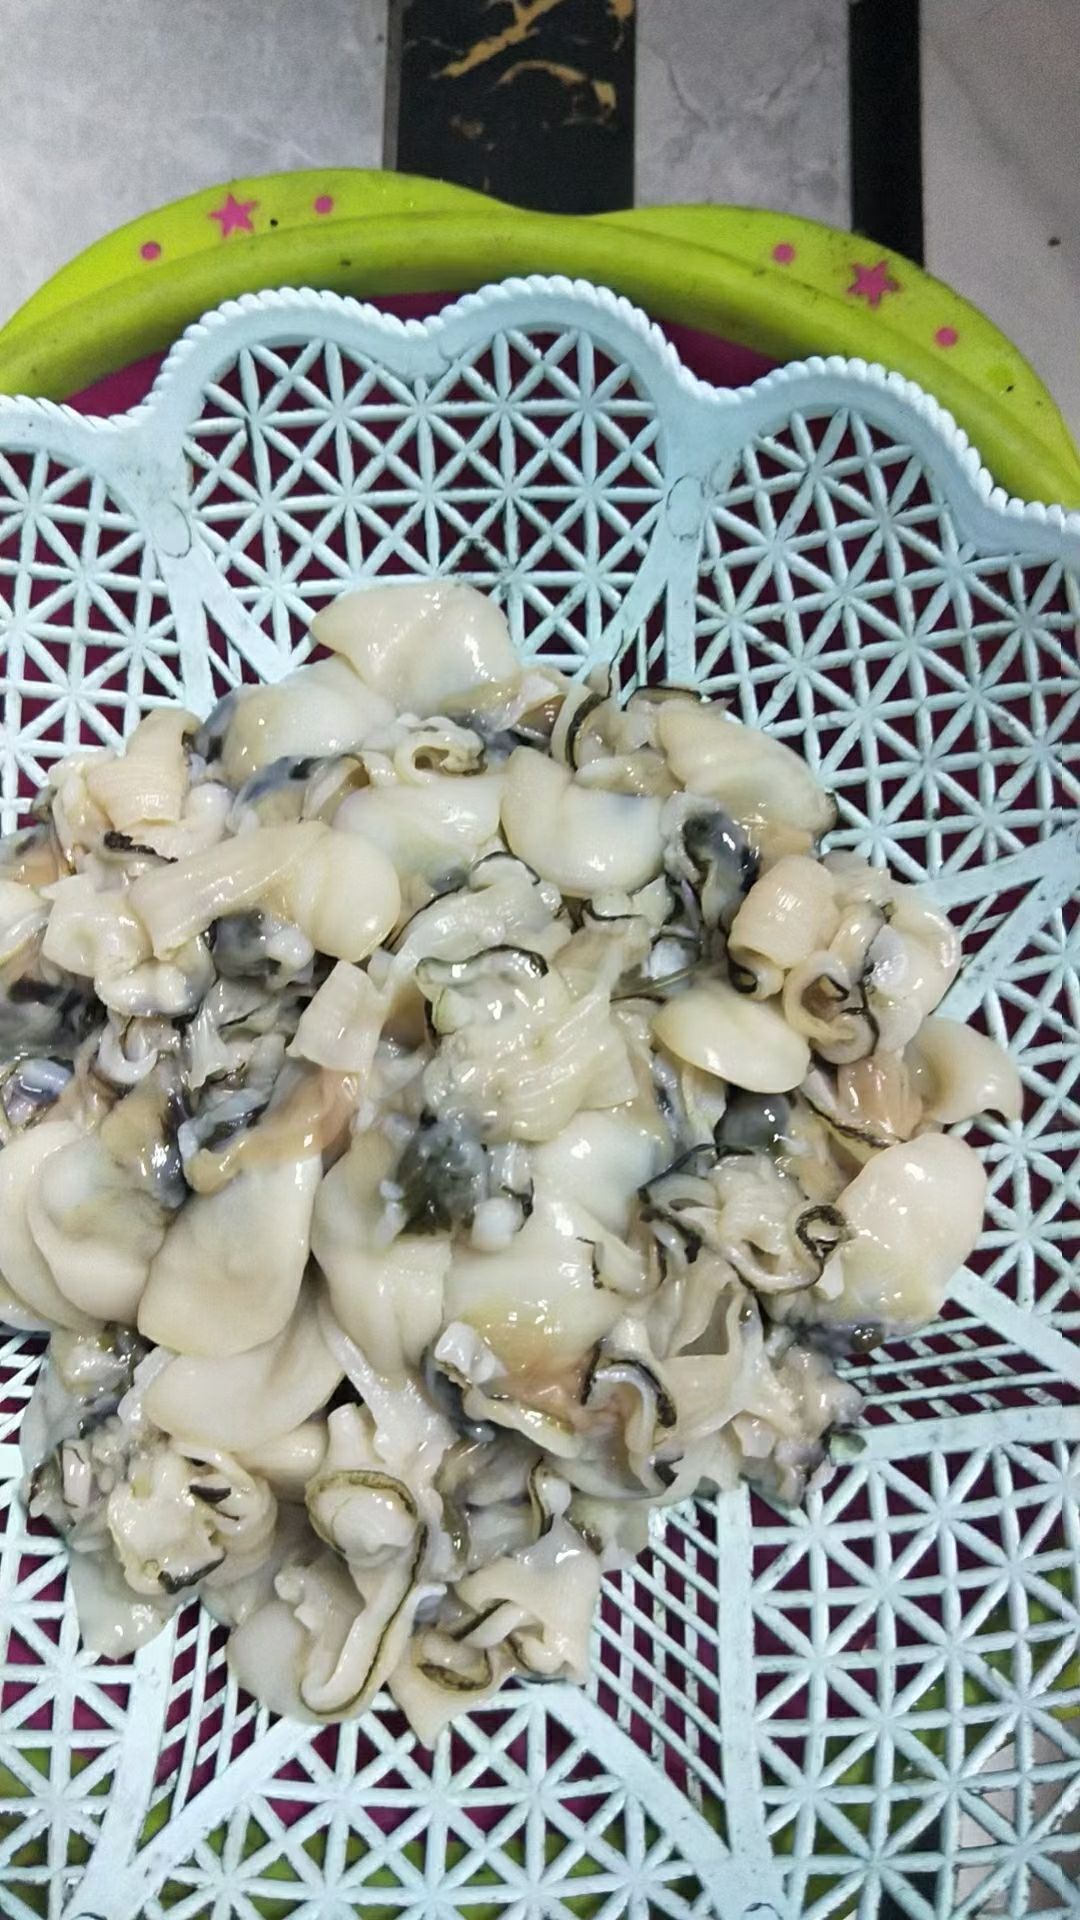 食品工艺 鲜活水产 品种名 沙螺 是否带壳 带壳